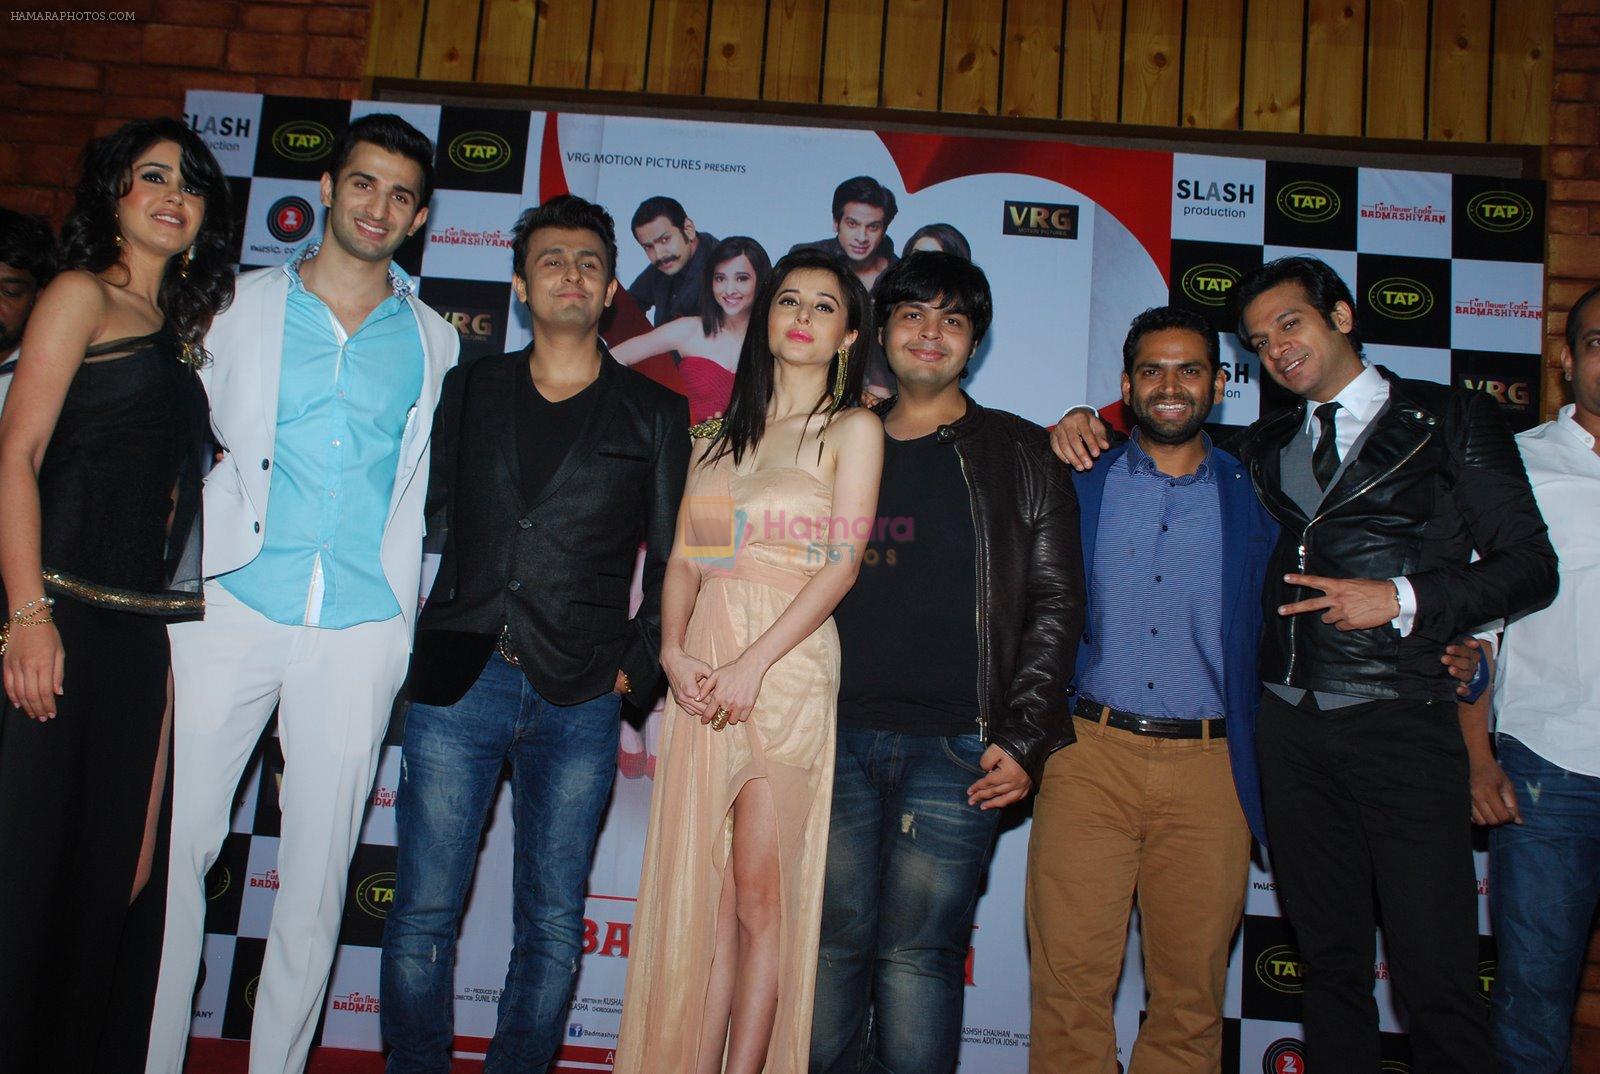 Gunjan Malhotra, Sidhant Gupta, Sonu Nigam, Suzanna Mukherjee, Amit Khanna, Sharib Hashmi, Karan Mehra at Badmashiyan music launch in Bandra, Mumbai on 4th Feb 2015